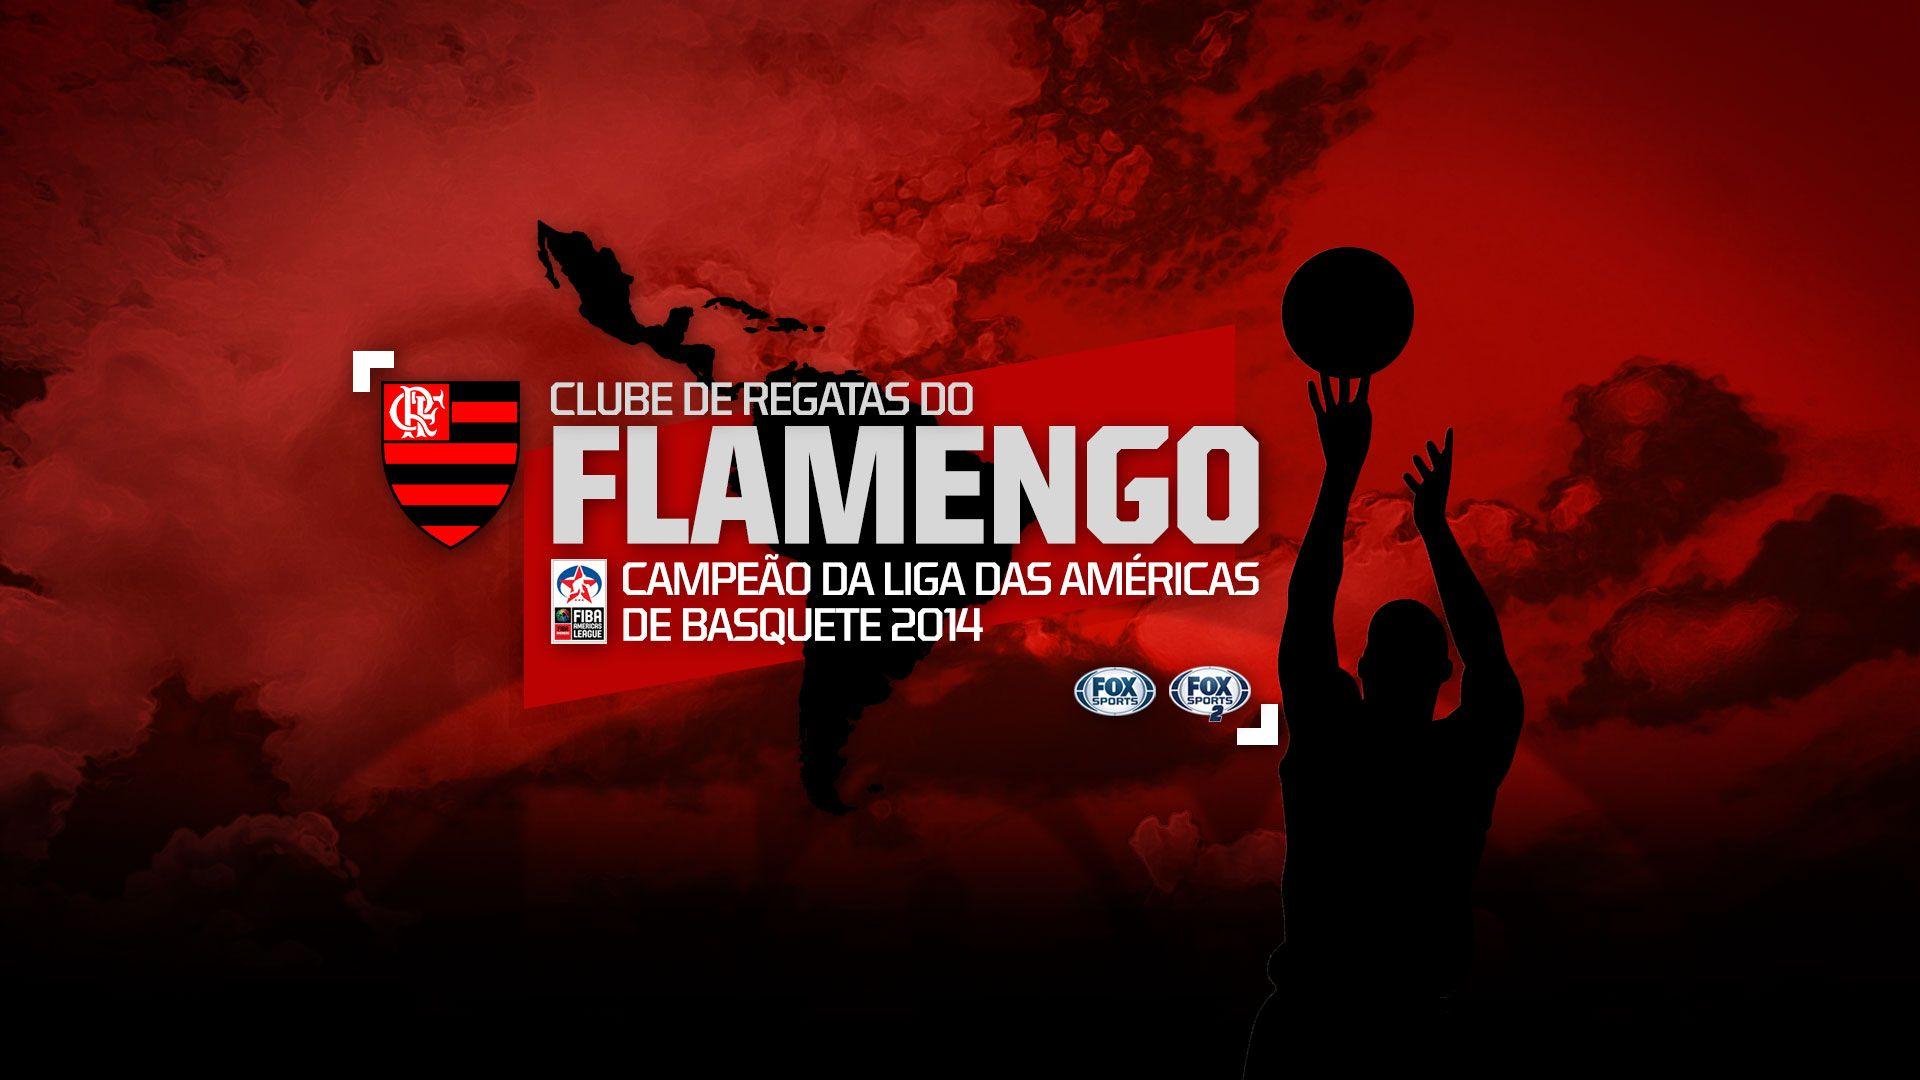 Baixe o wallpaper do Flamengo campeão da Liga das Américas. FOX